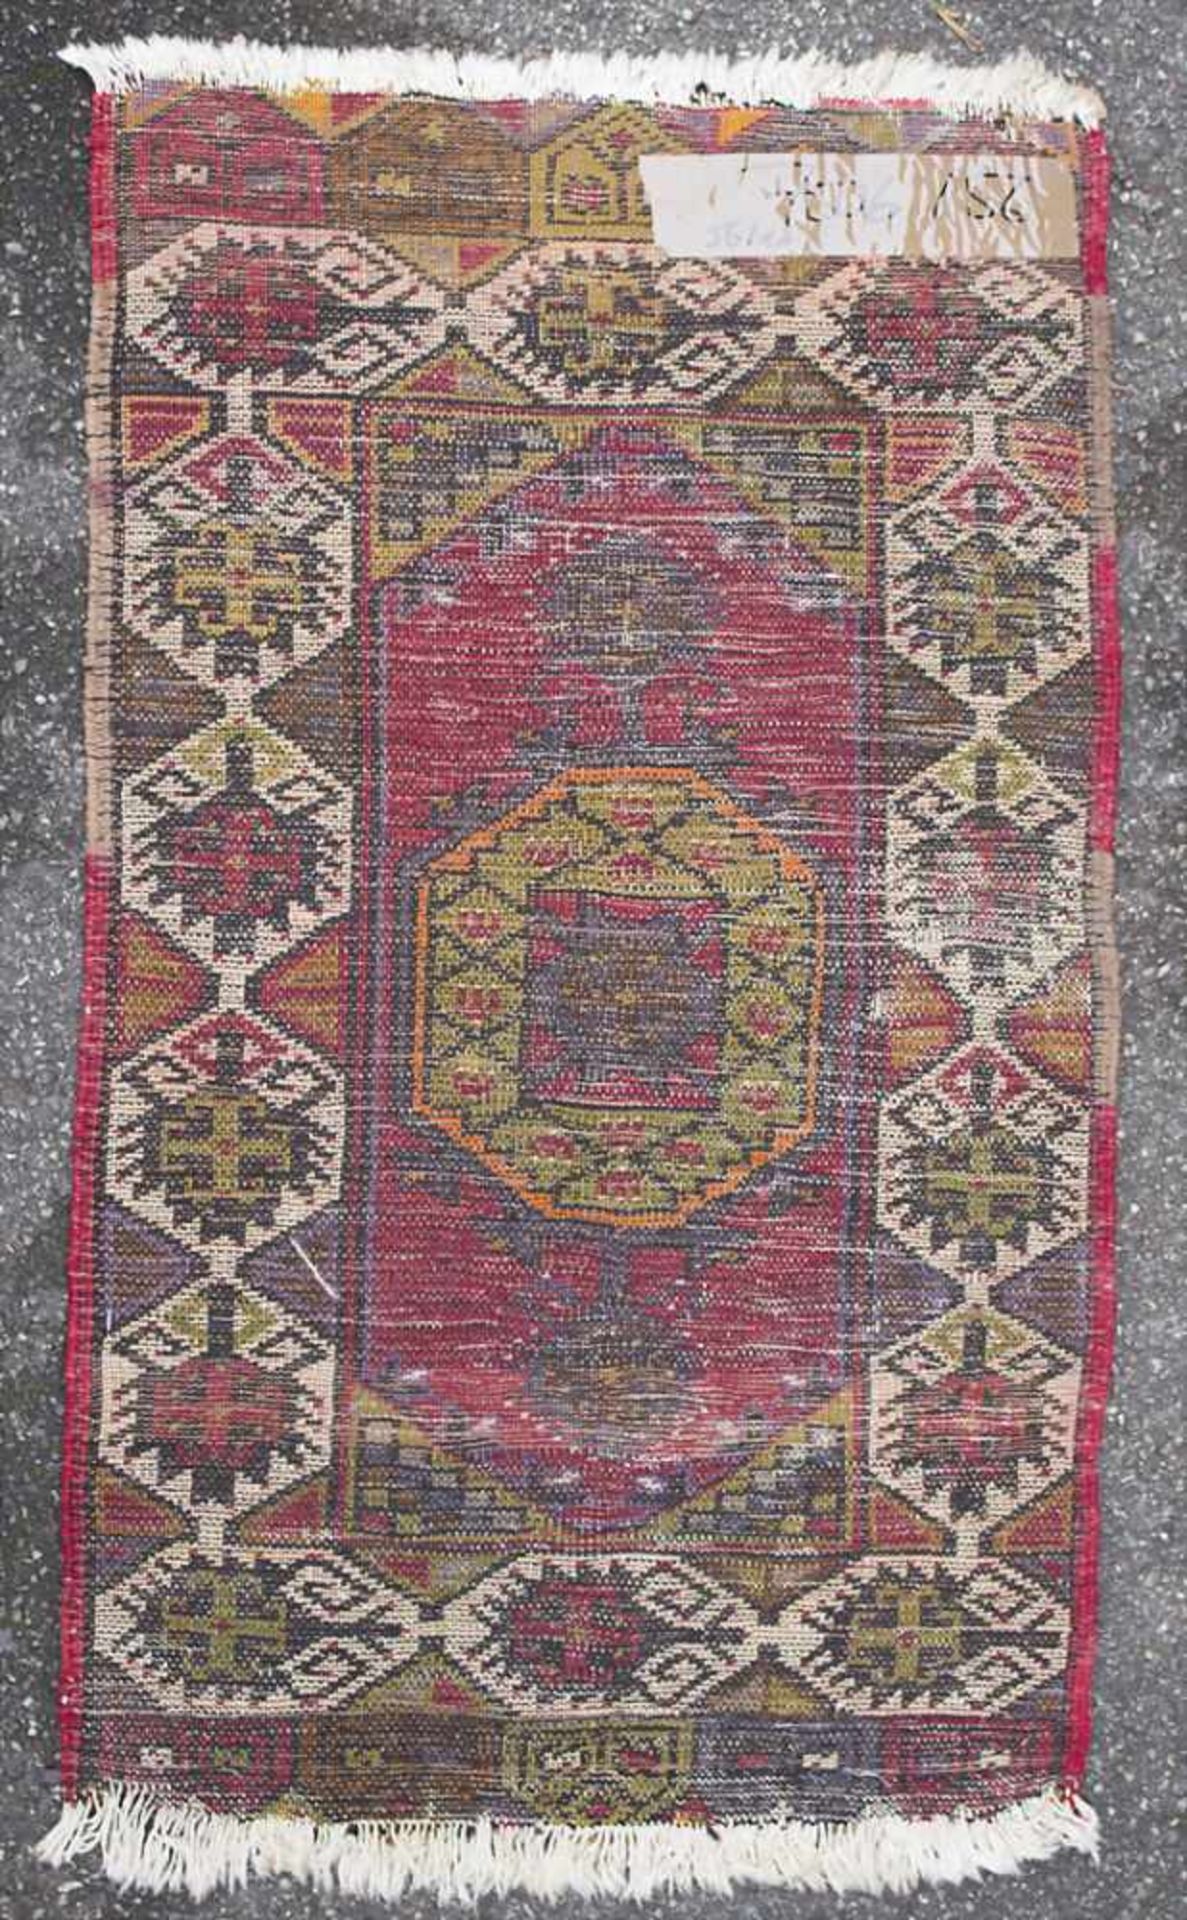 Orientteppich / An oriental carpetMaterial: Wolle auf Baumwolle, Maße: 88 x 49 cm, Zustand: gut, - Image 3 of 3